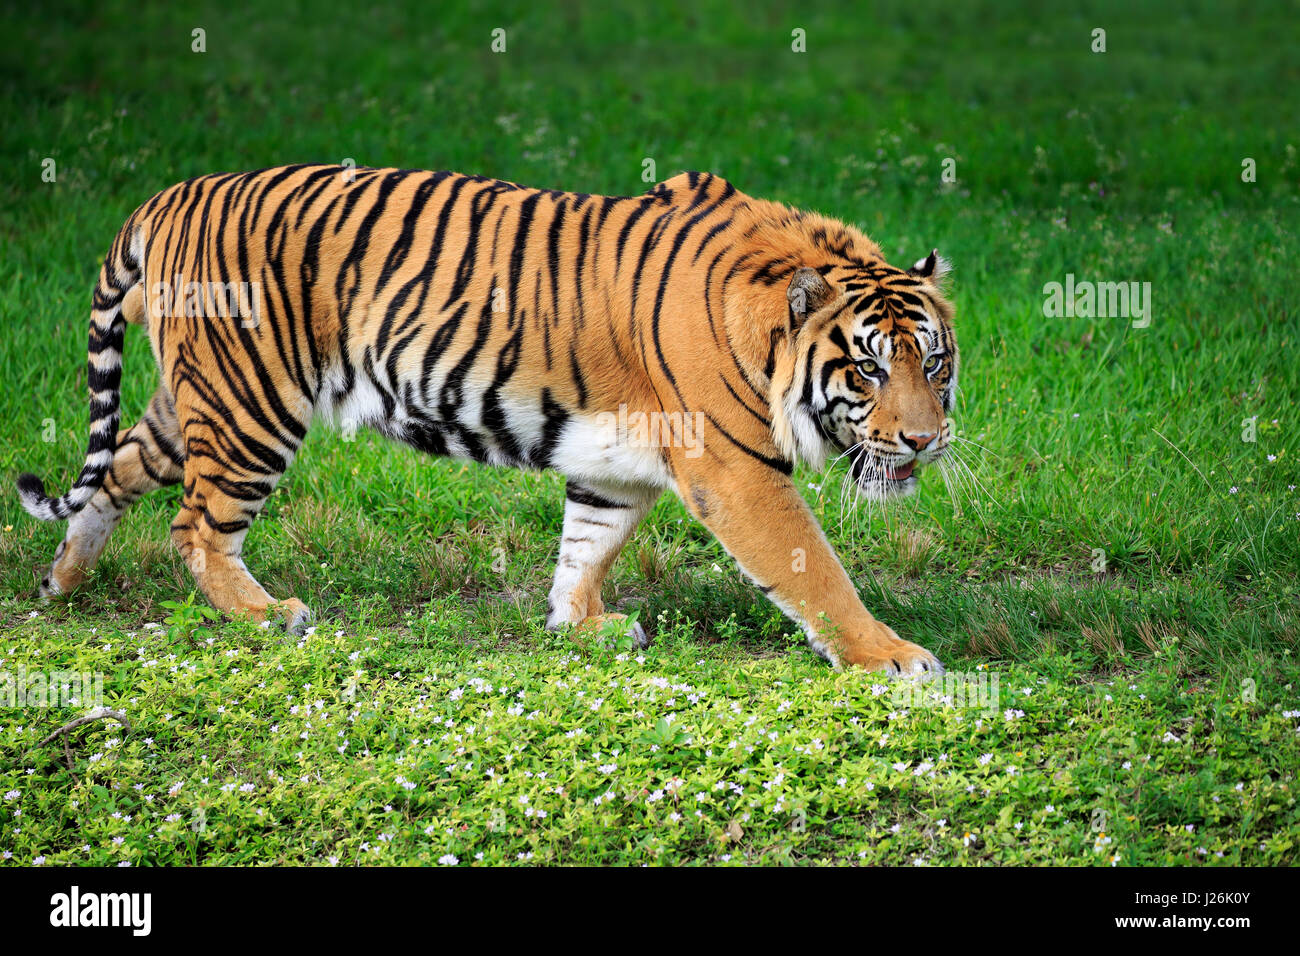 Tigre de Sumatra (Panthera tigris sumatrae) mâle adulte, d'exécution, l'occurrence à Sumatra, en Asie du sud-est, captive Banque D'Images